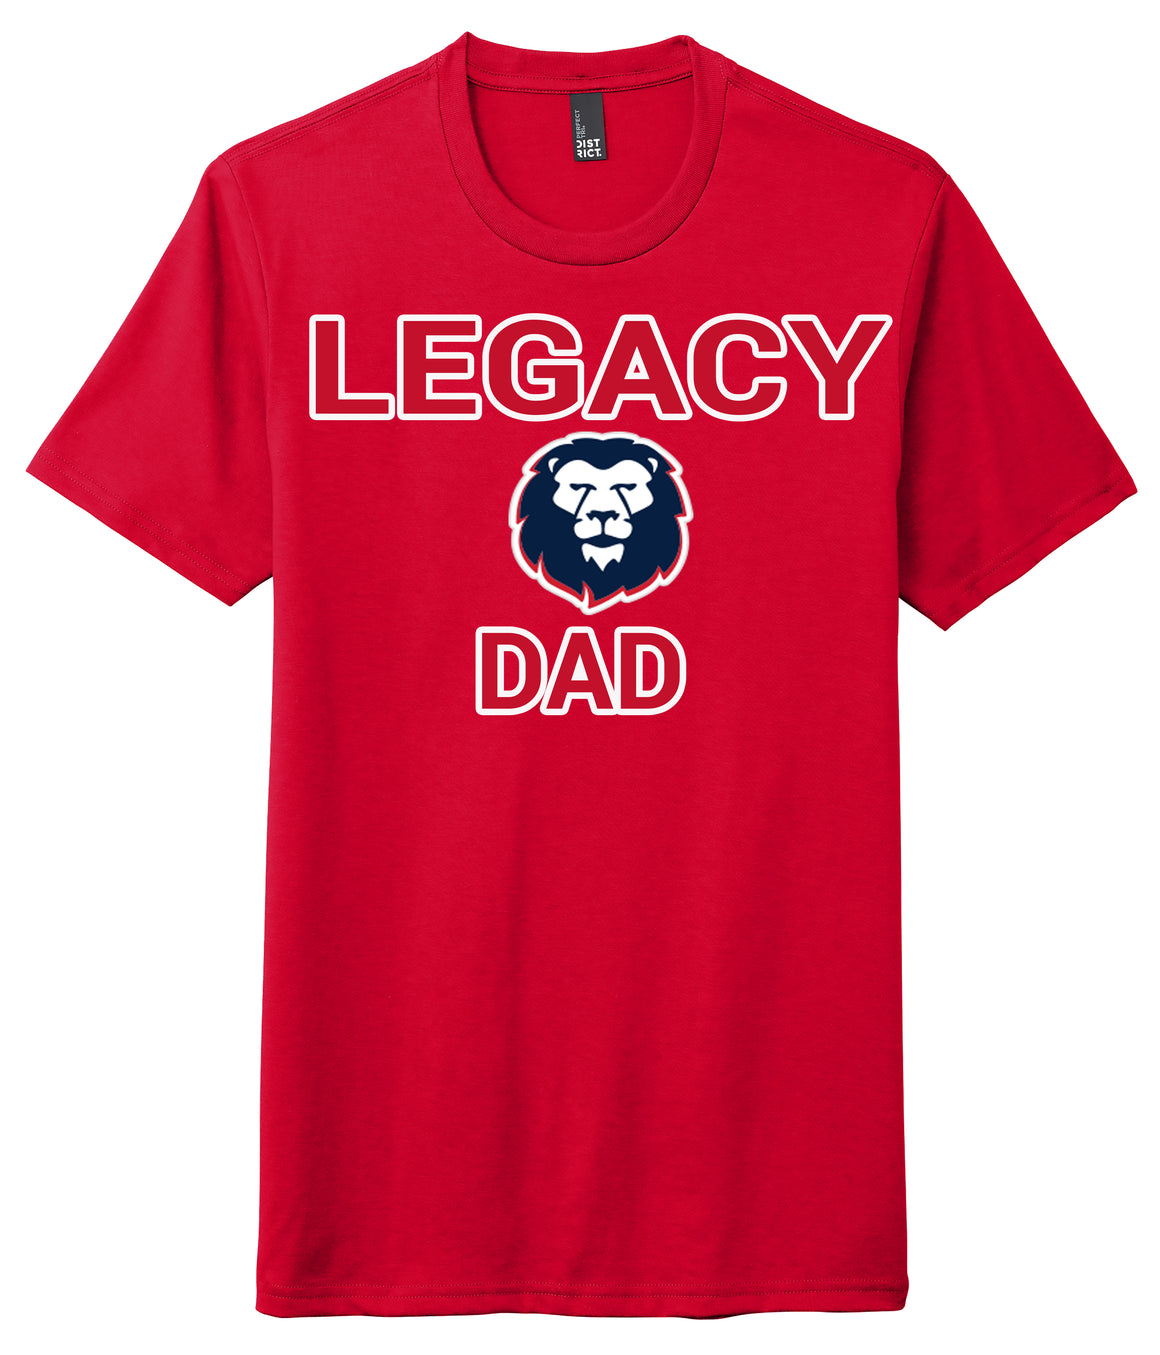 Legacy Traditional School Maricopa - Dad Shirt